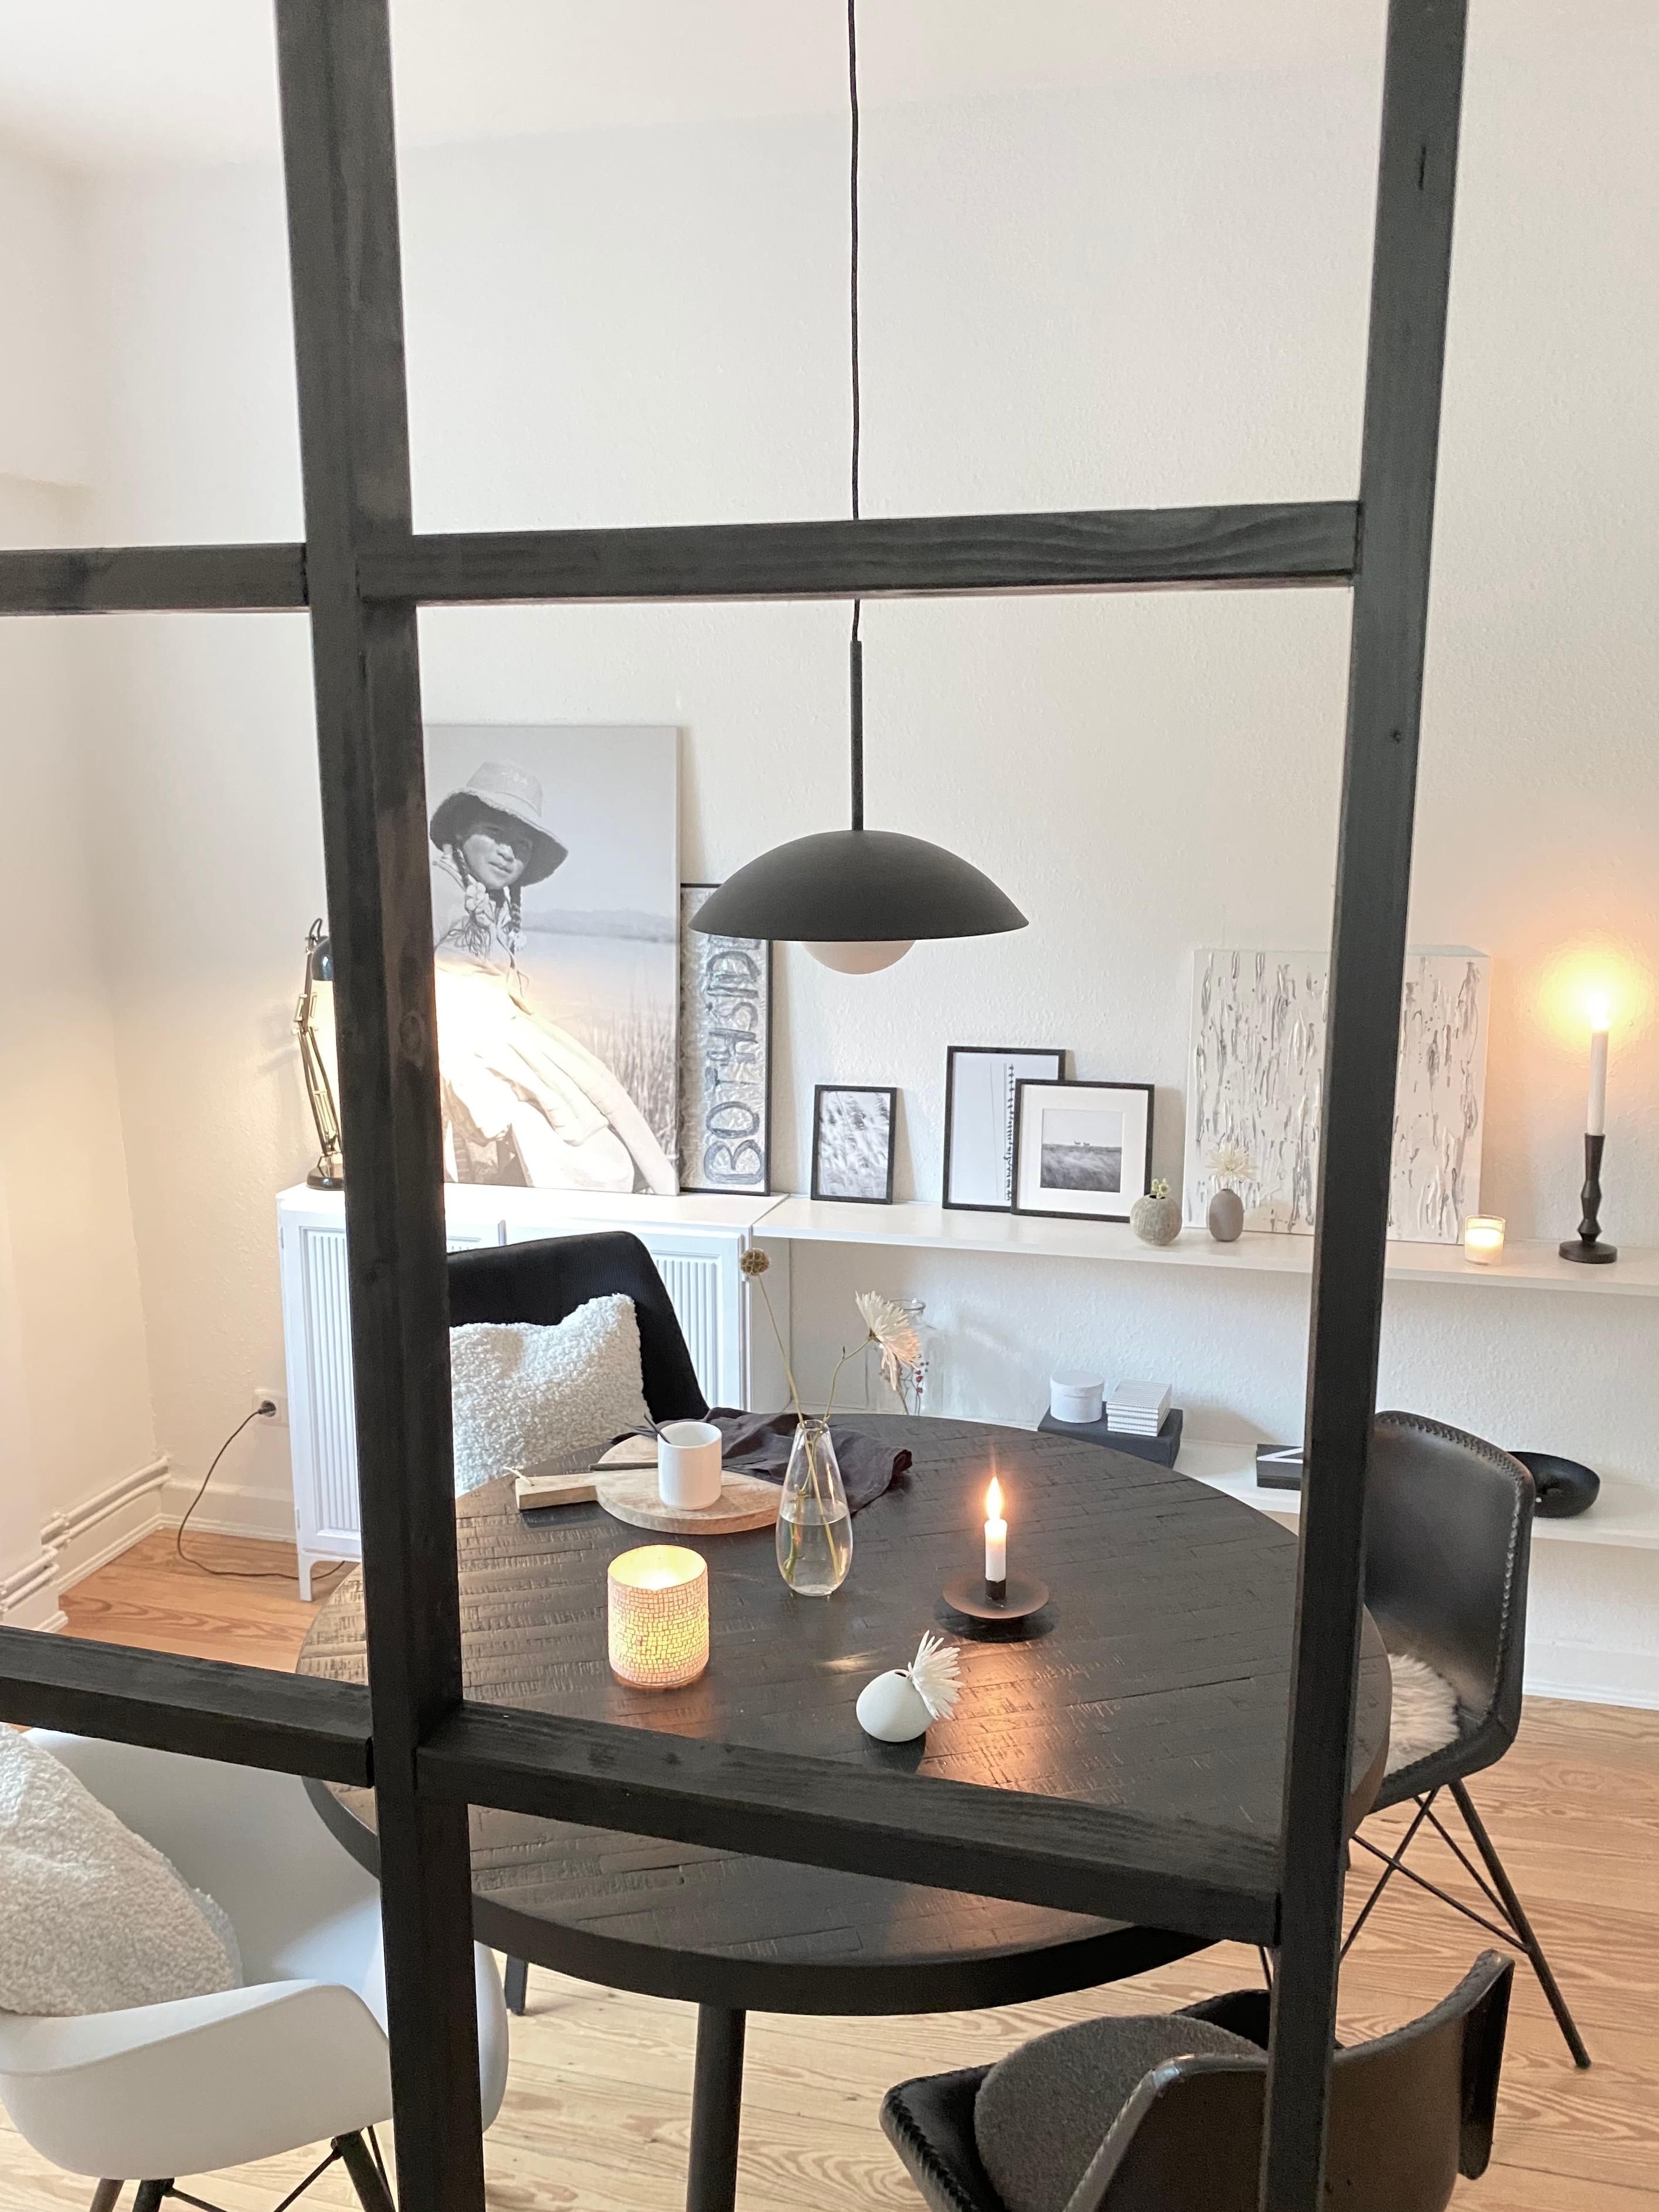 #Esszimmer #Black and White  #Minimalistisch #Holzboden #Runder Tisch #Lampe #DIY 

Neuer Durchblick ♡︎